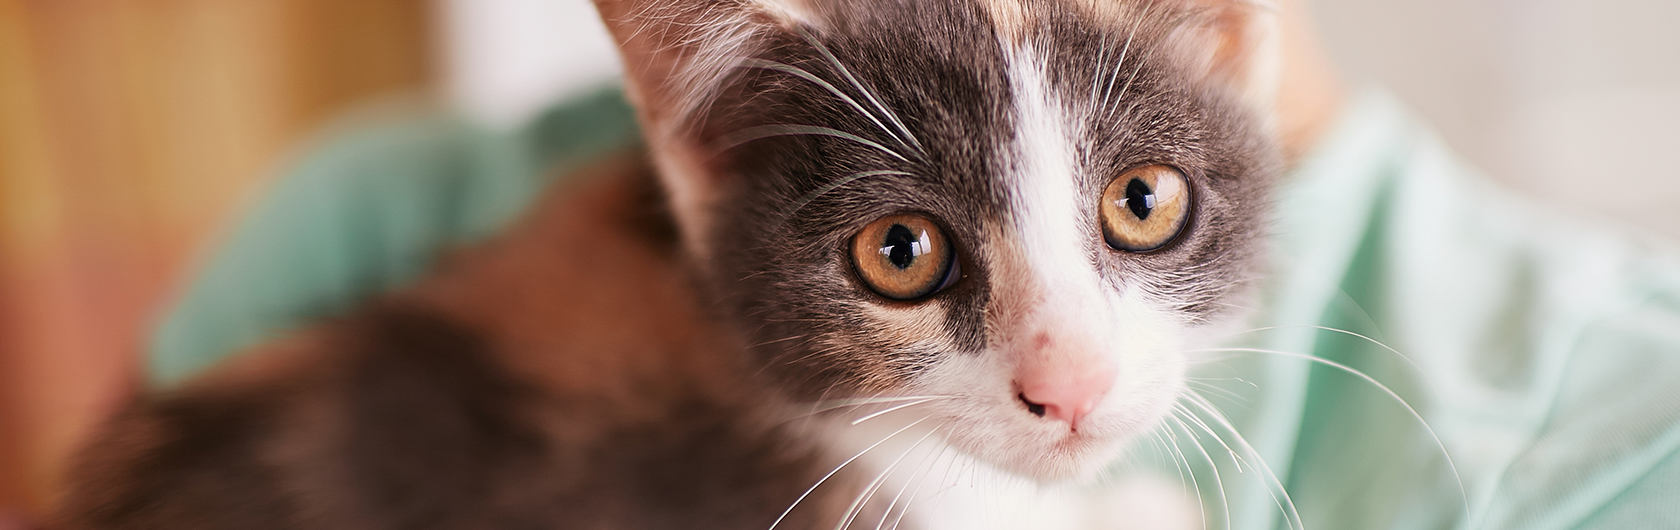 El-cuidado-de-gatos-y-alimentos-para-gatos-de-calidad-nutribon